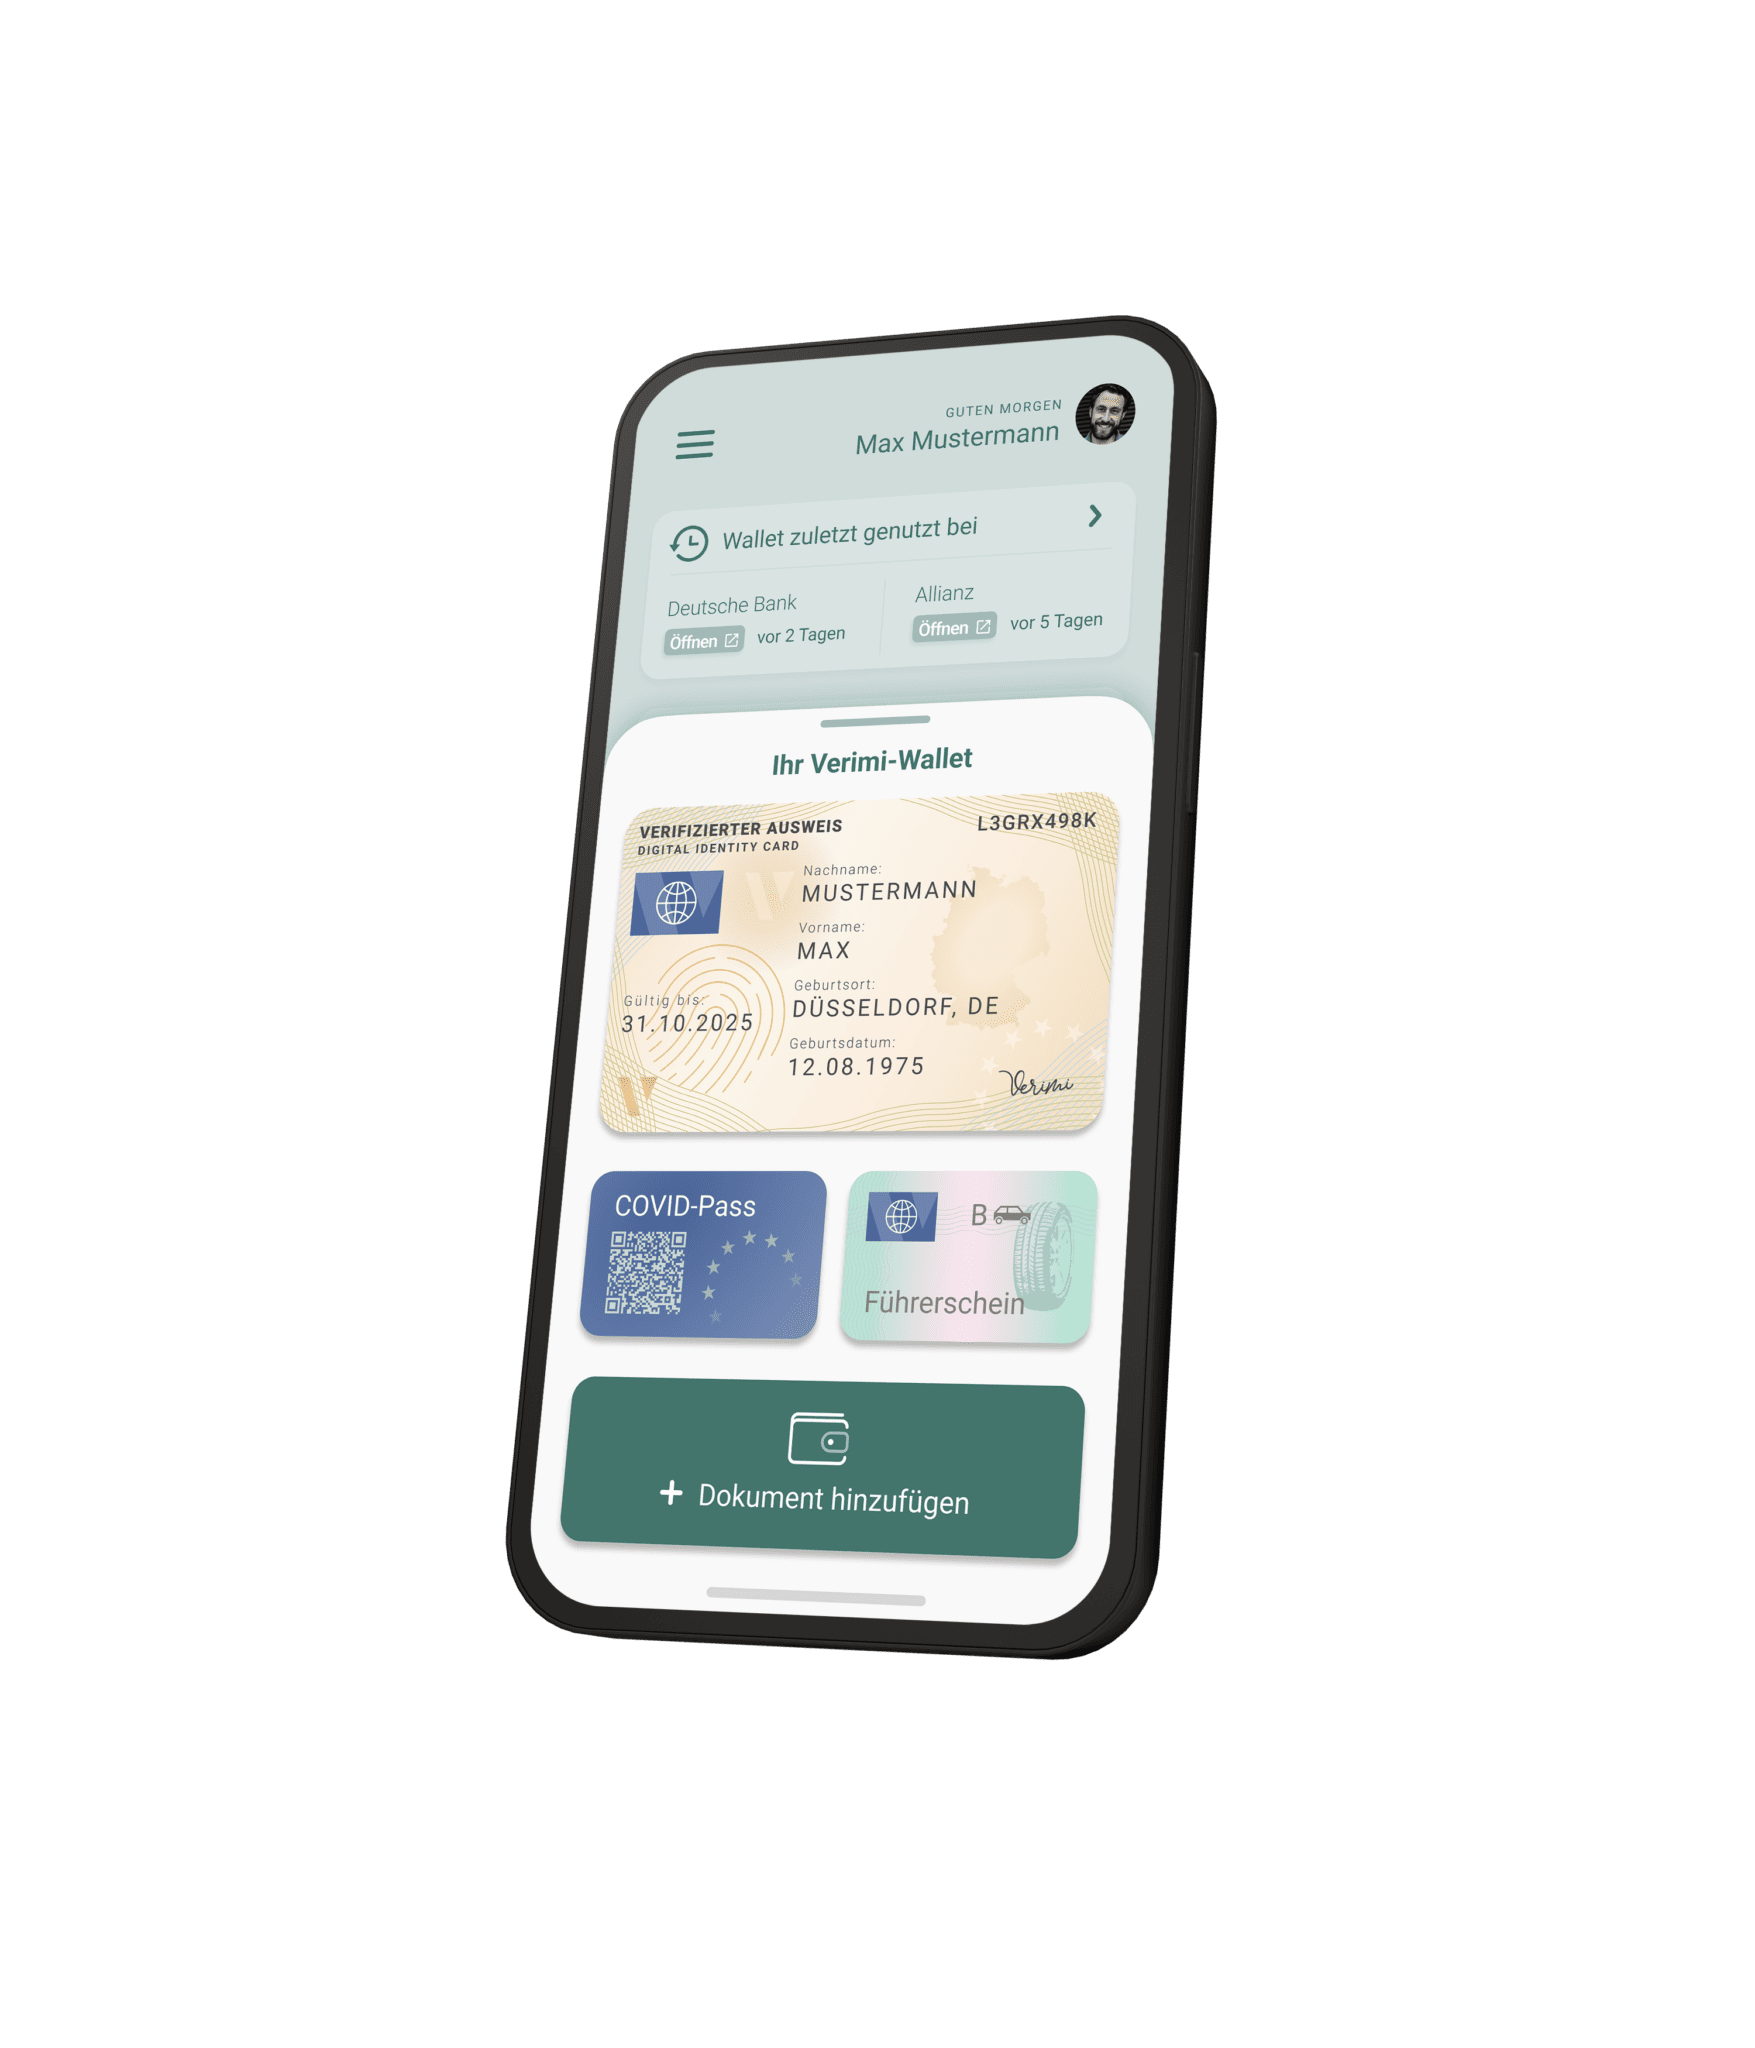 Dreidimensionales Handy - auf dem Screen ist die Verimi ID-Wallet zu sehen mit einem Profilbild oben rechts, darunter die letzten Aktivitäten